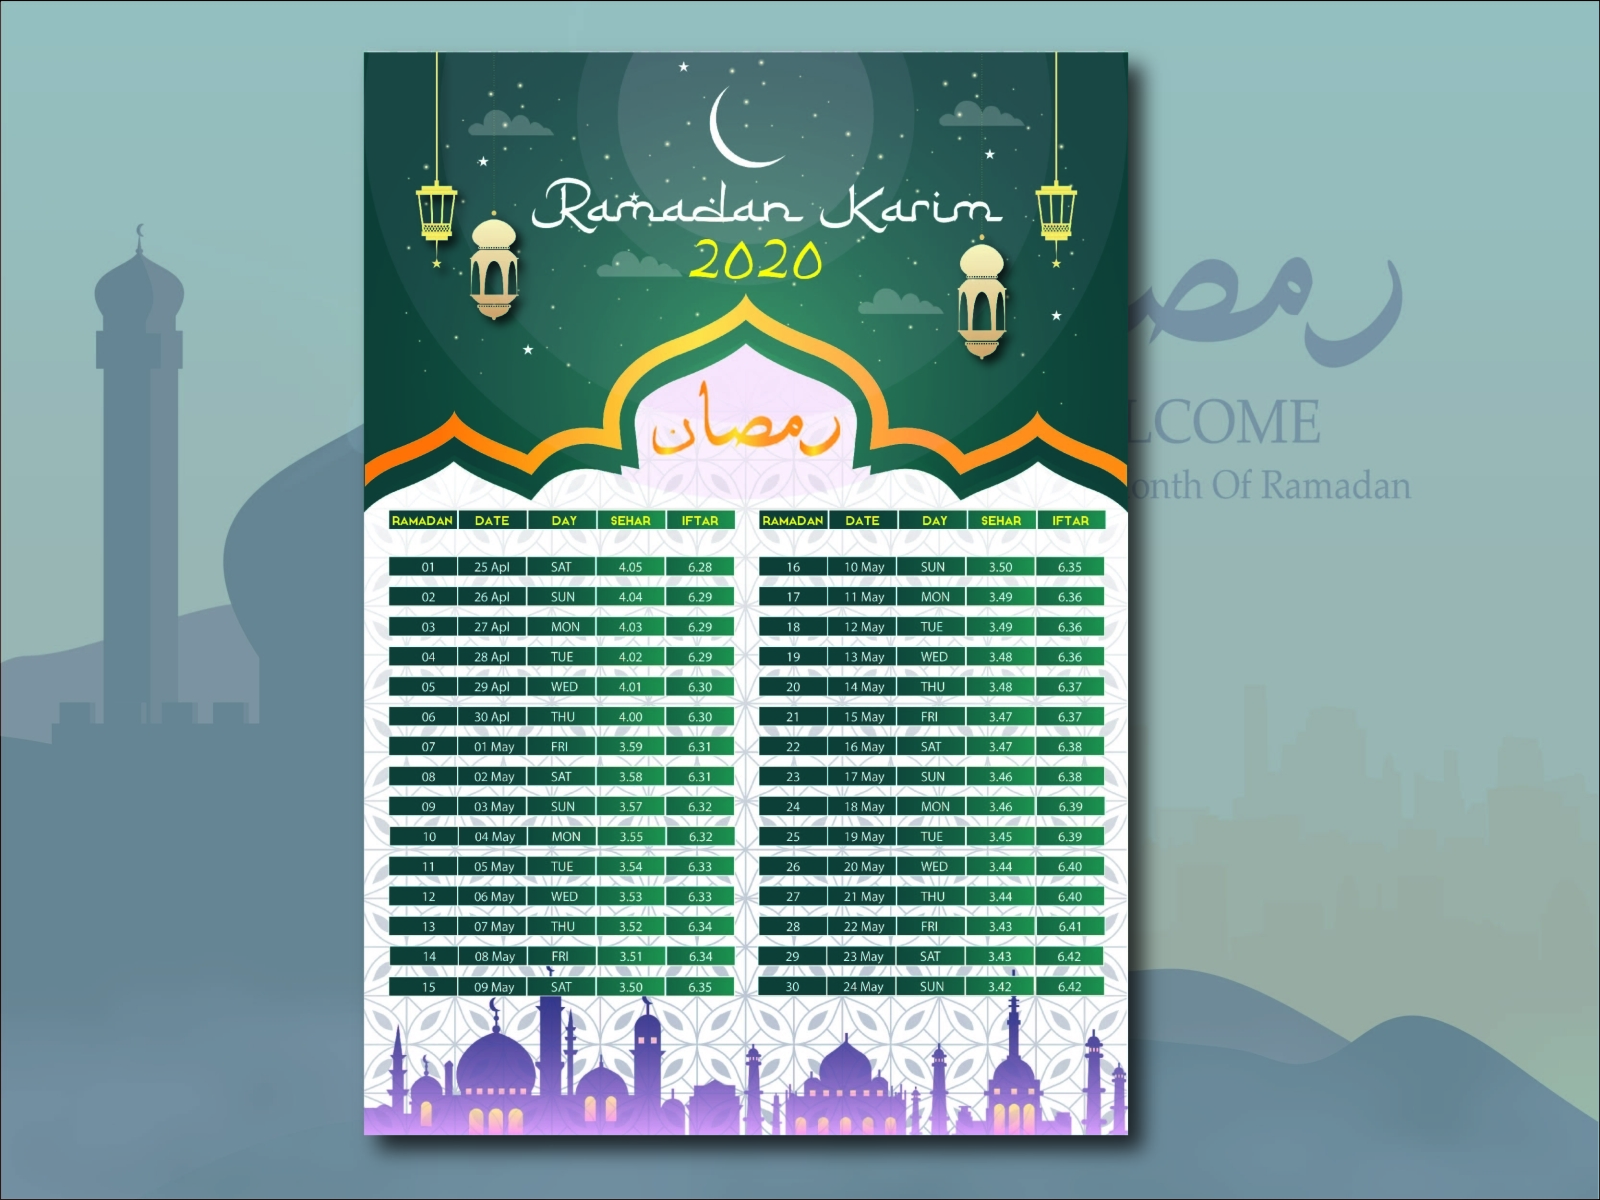 Ramadan Calendar Design by Ahsanul Hoq on Dribbble